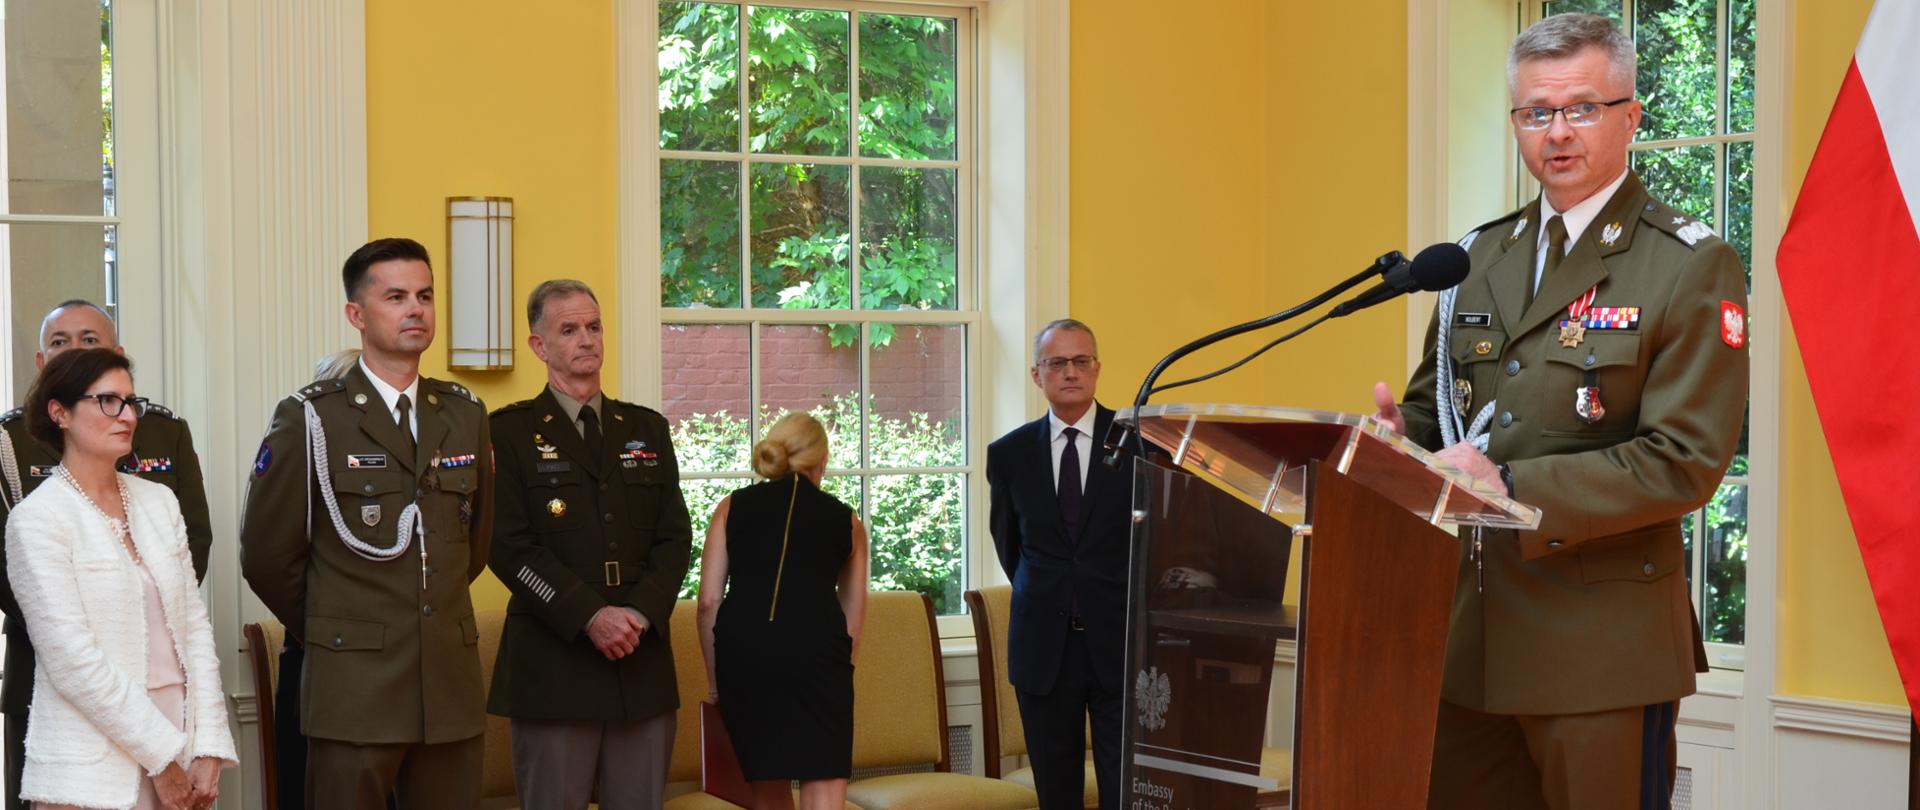 Gen. brygady Krzysztof Nolbert przemawia do zgromadzonych gości